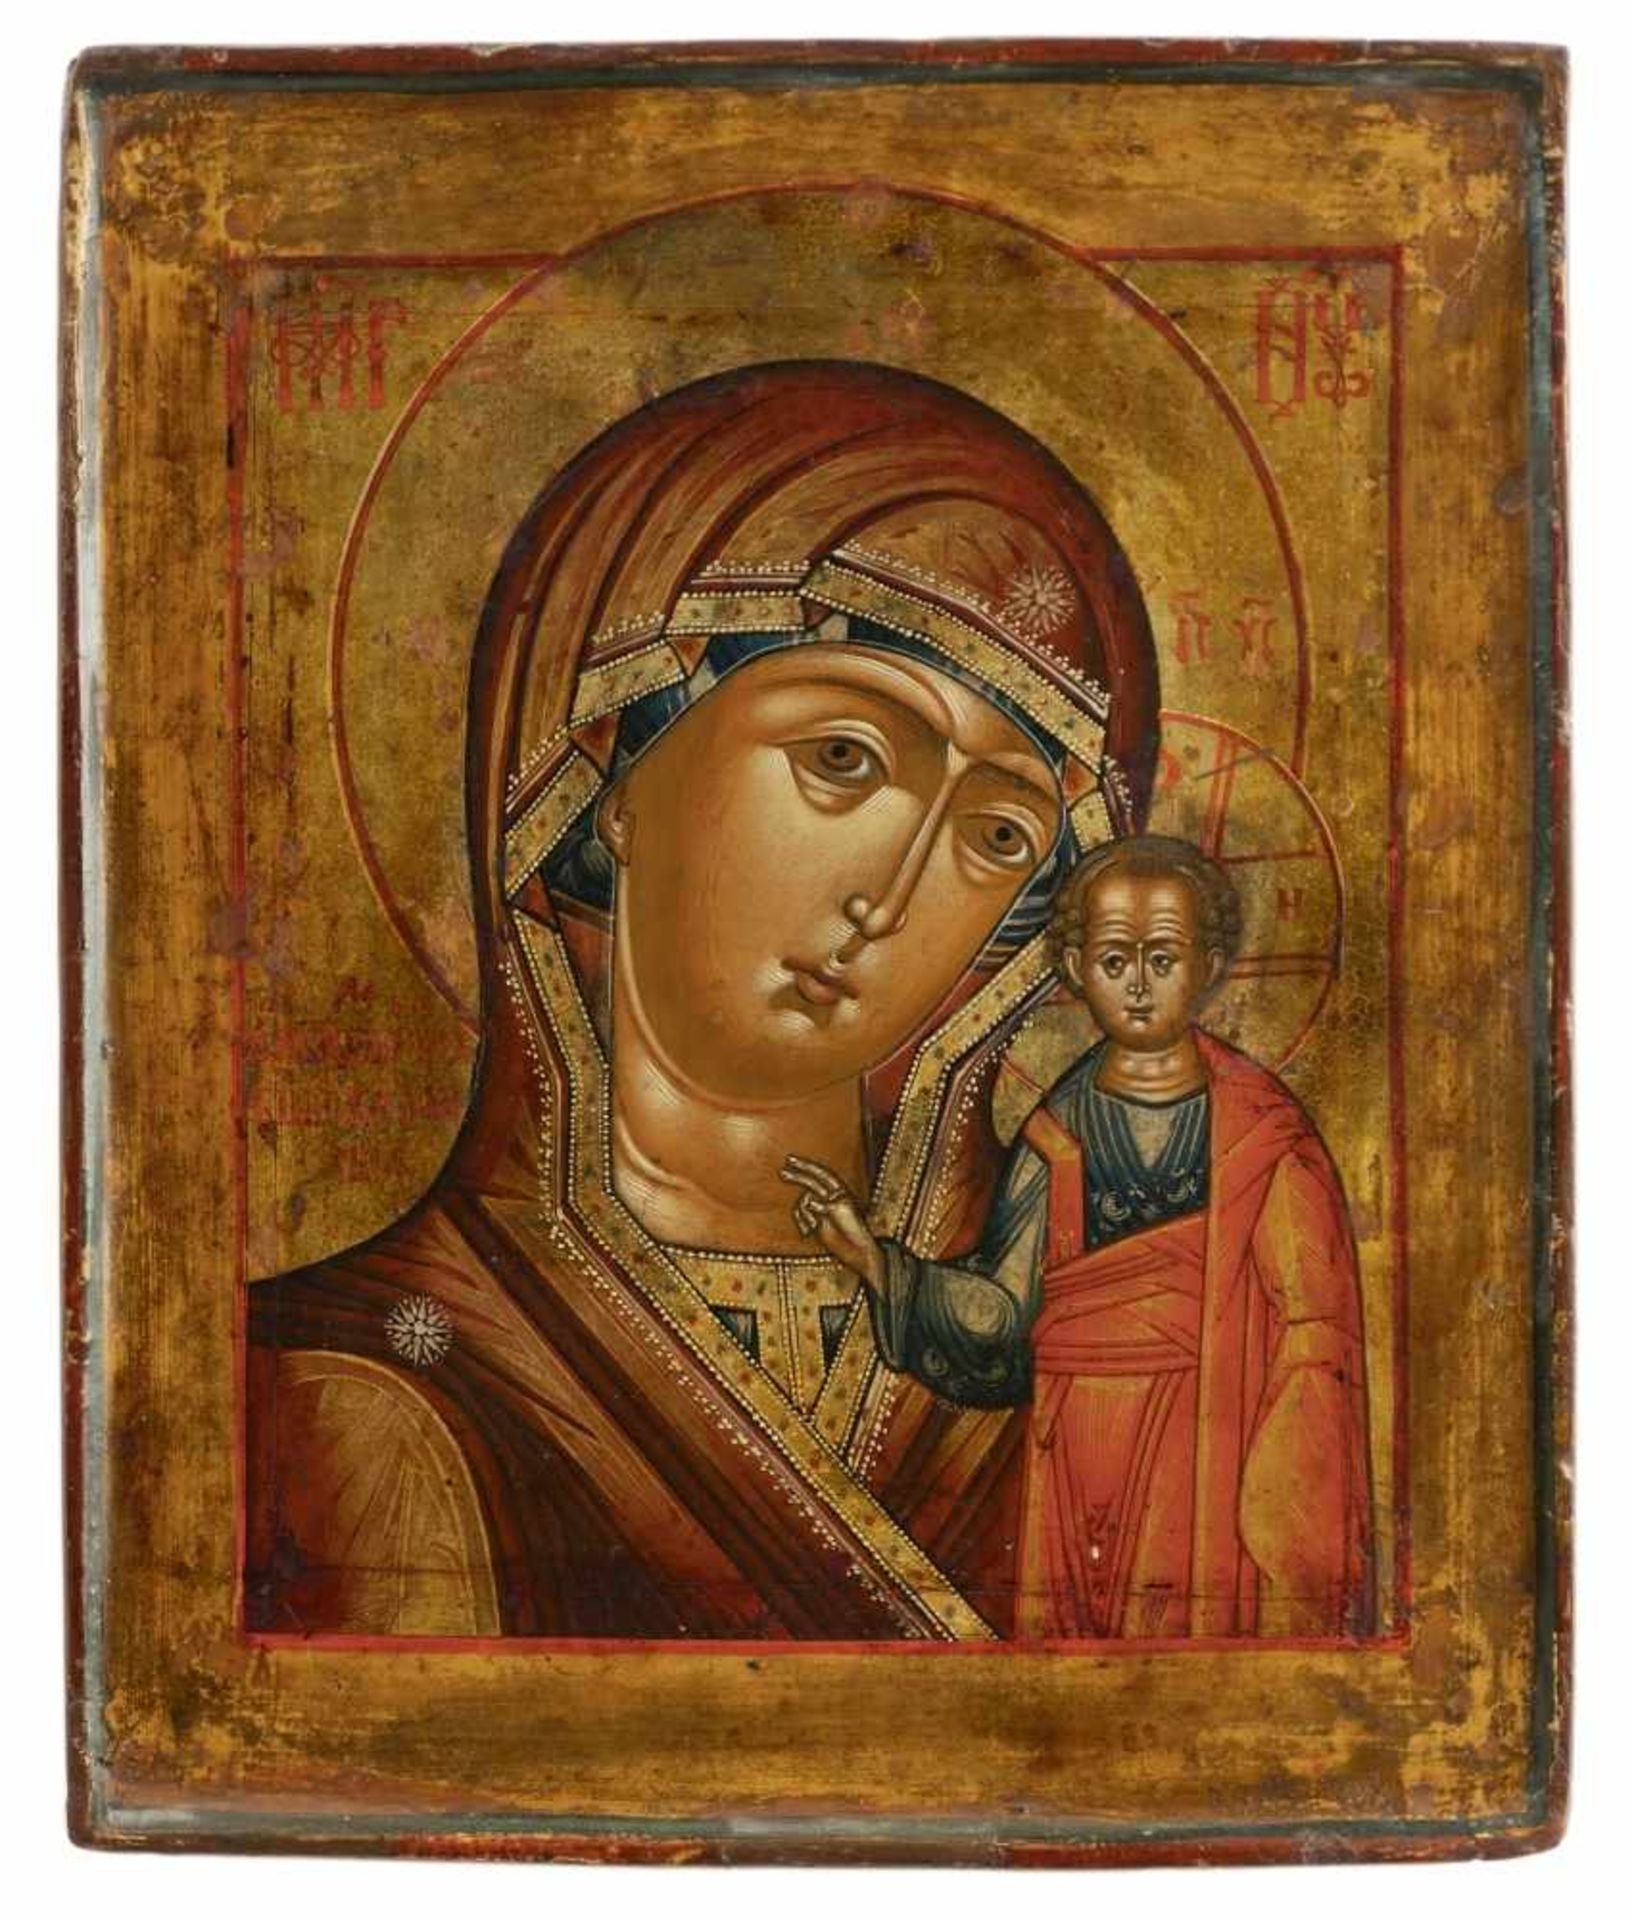 Gottesmutter von KasanRussische Ikone, Tempera / Holz, 19. Jh.31 x 26 cmDer Überlieferung nach wurde